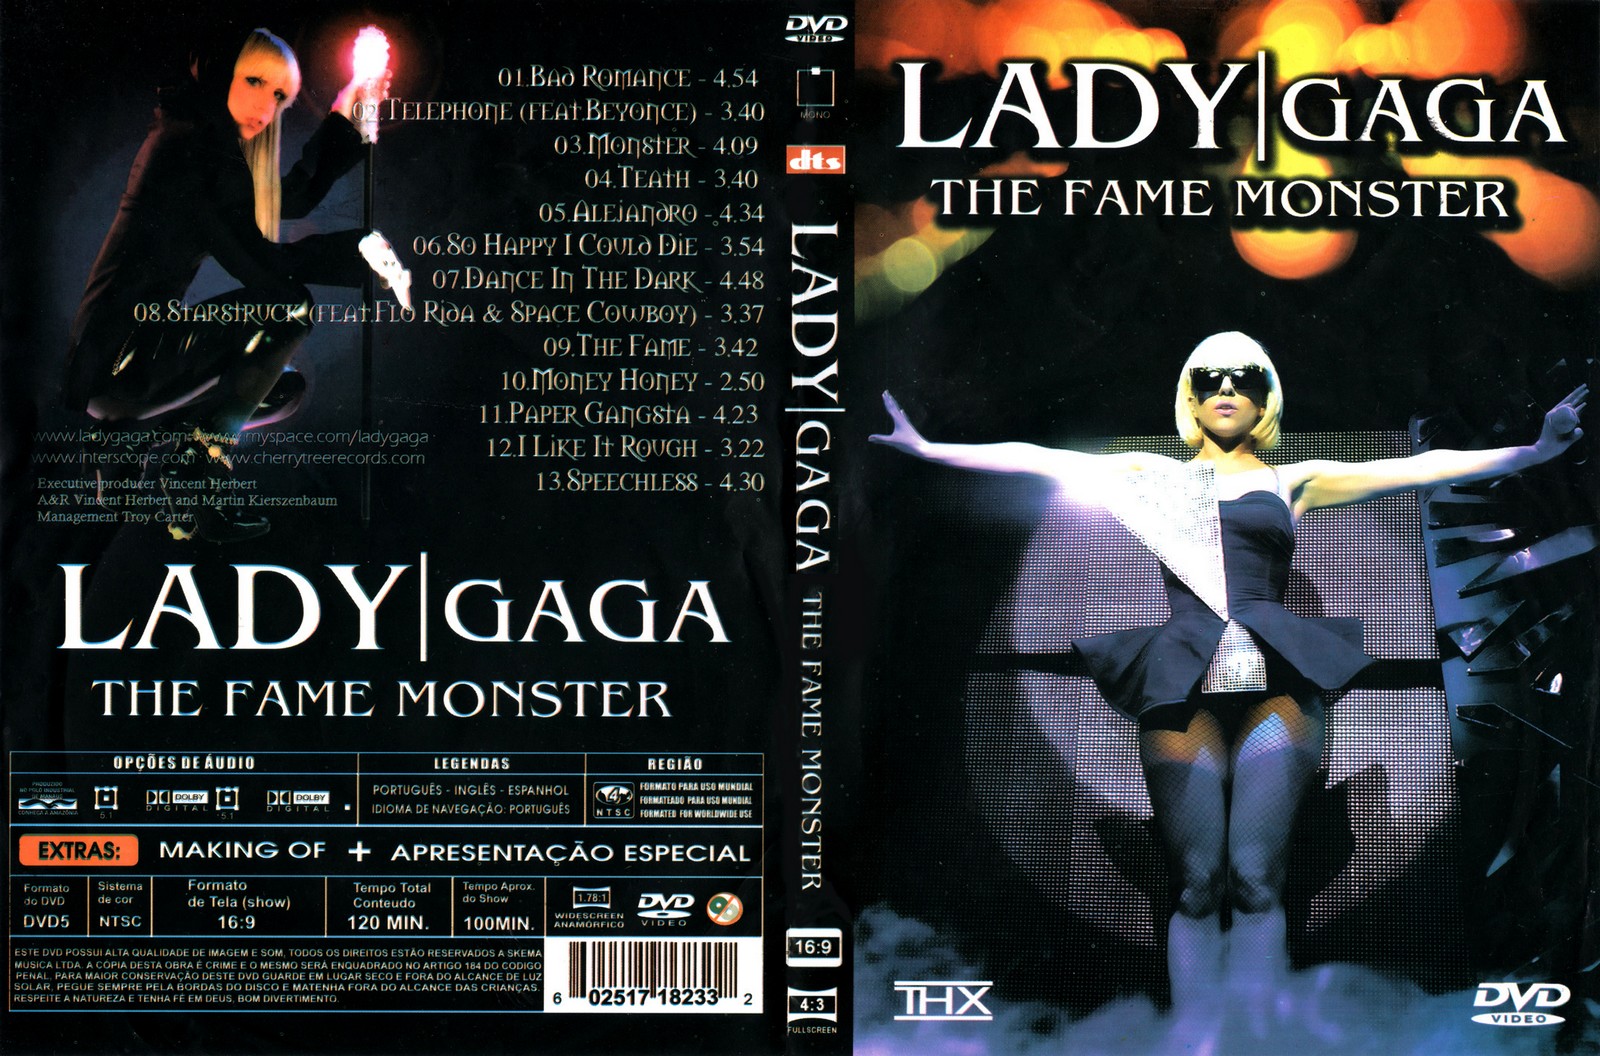 http://2.bp.blogspot.com/-_BU8gPmOENM/Tr8hVN9MuFI/AAAAAAAAMqs/zN8RypEILPk/s1600/Lady-Gaga-The-Fame-Monster.jpg